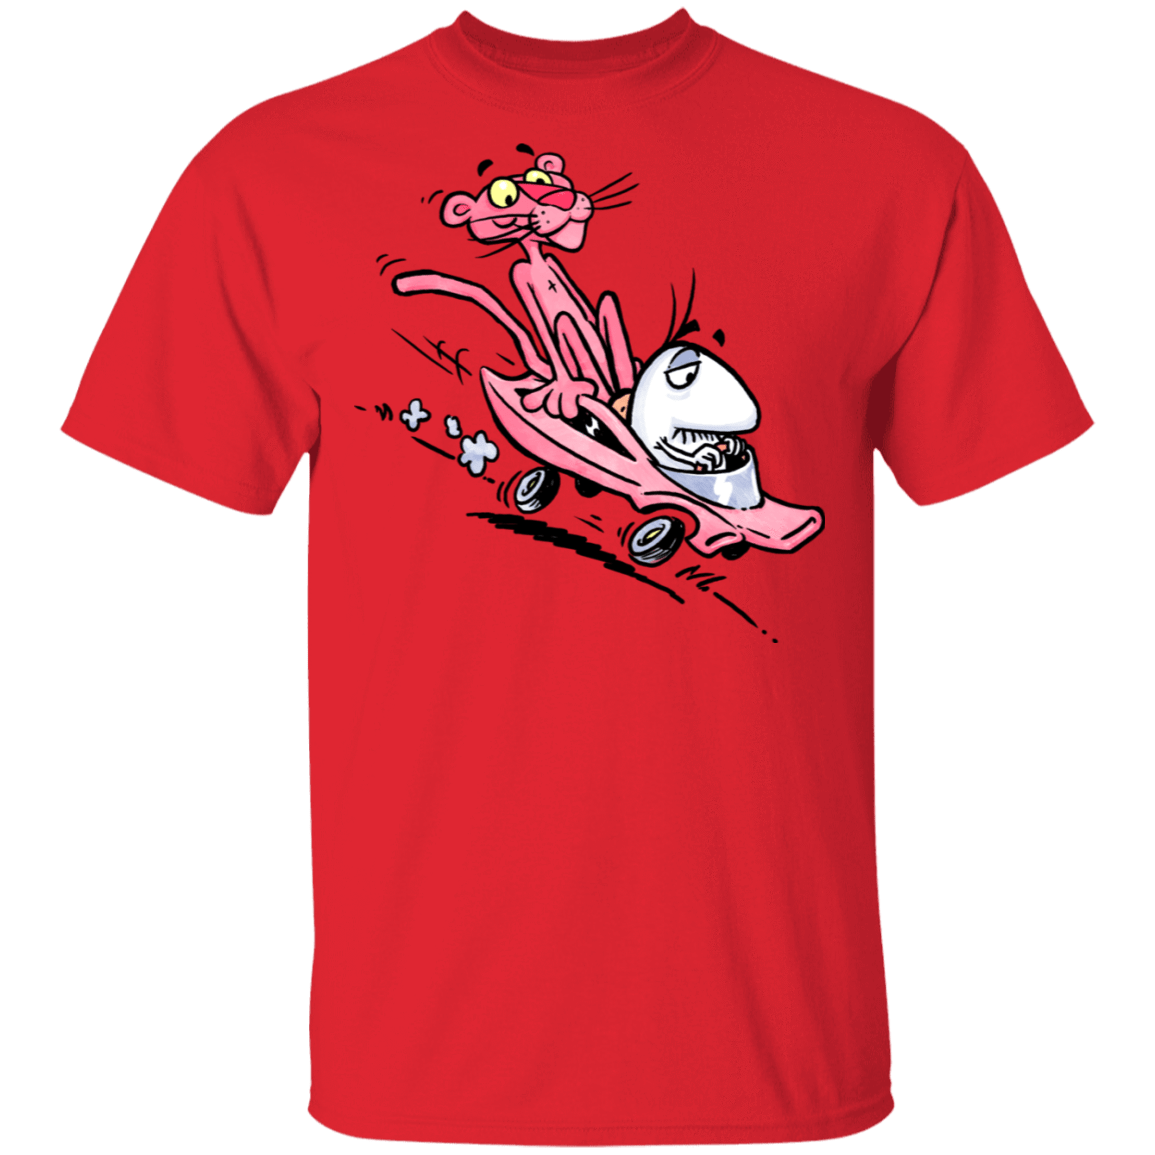 T-Shirts Red / S Littleman n Pinks T-Shirt